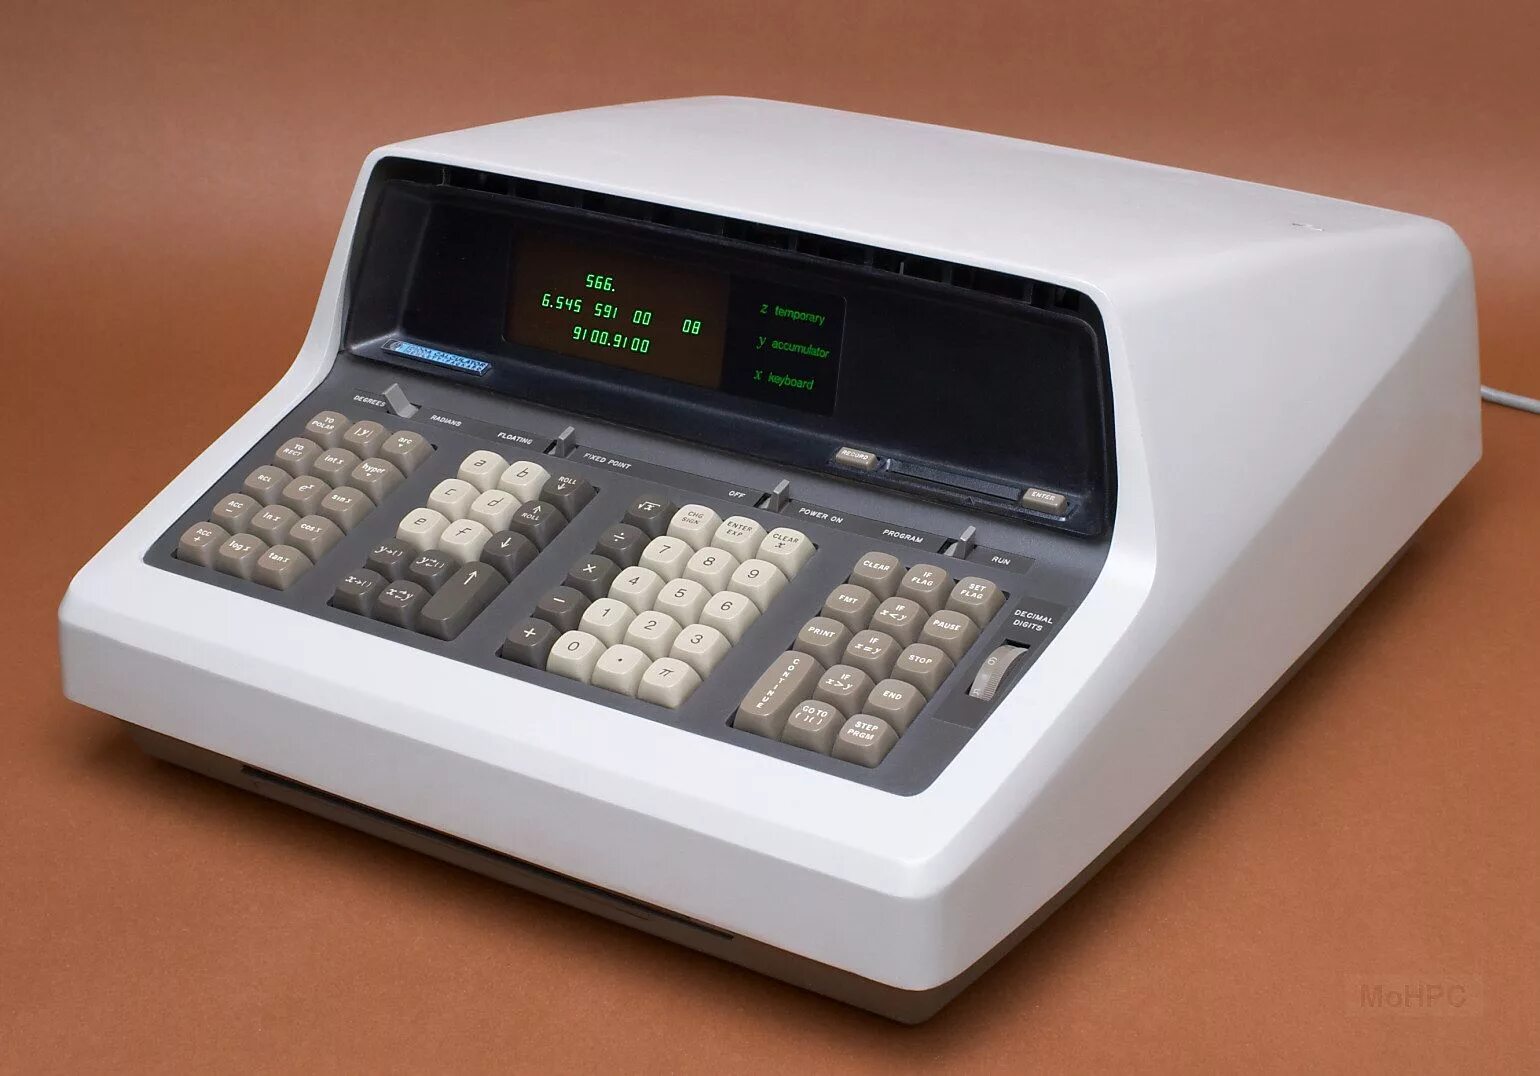 Hewlett-Packard 9100a. Компьютер Хьюлетт Паккард. First calculating